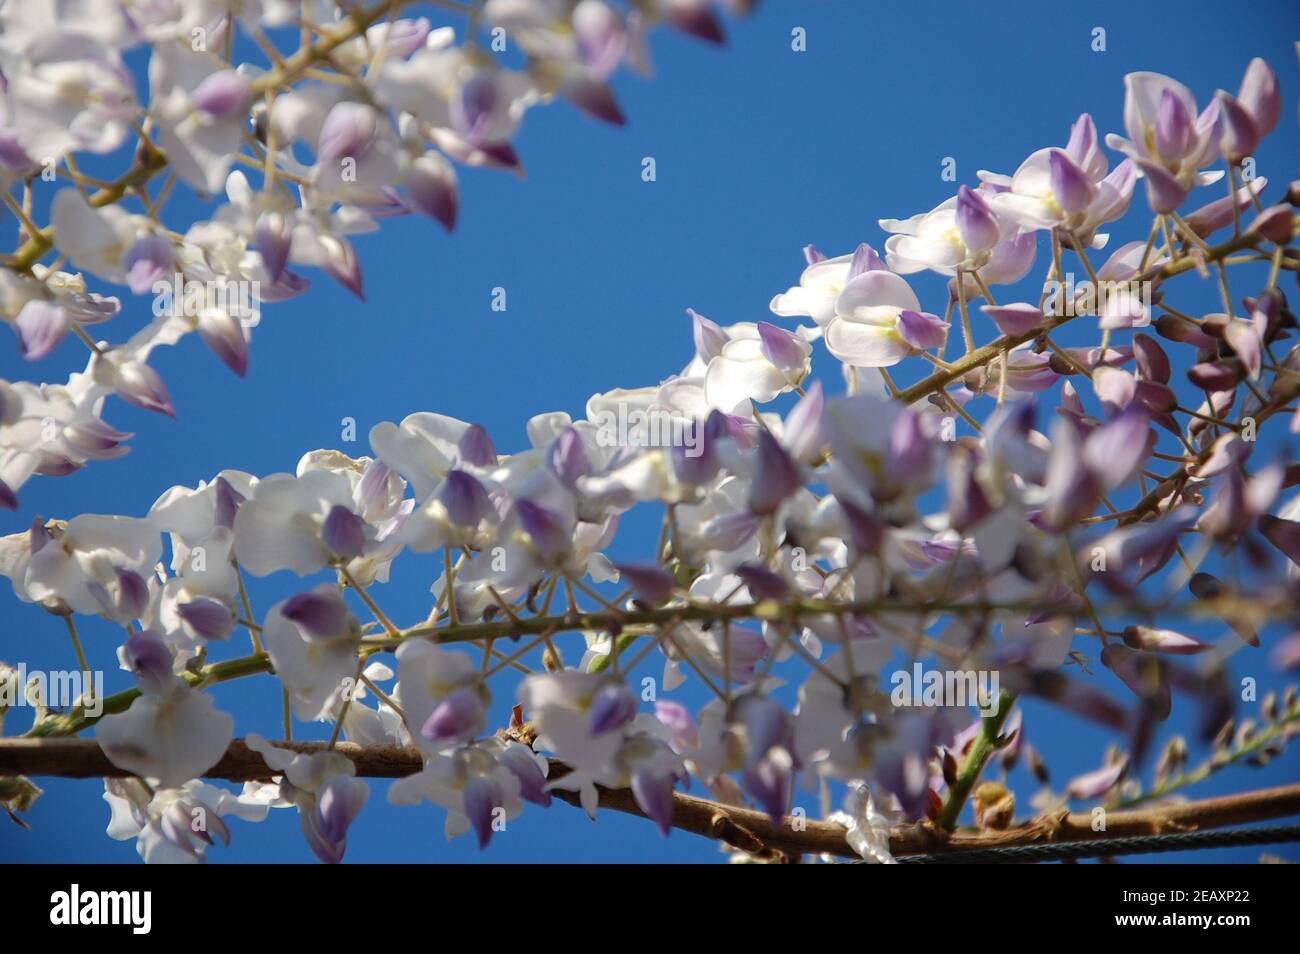 Wisteria lila Farben Blumen auf Pflanzenansicht von unten nach oben Mit klarem blauen Himmel und Platz für Text schreiben Stockfoto